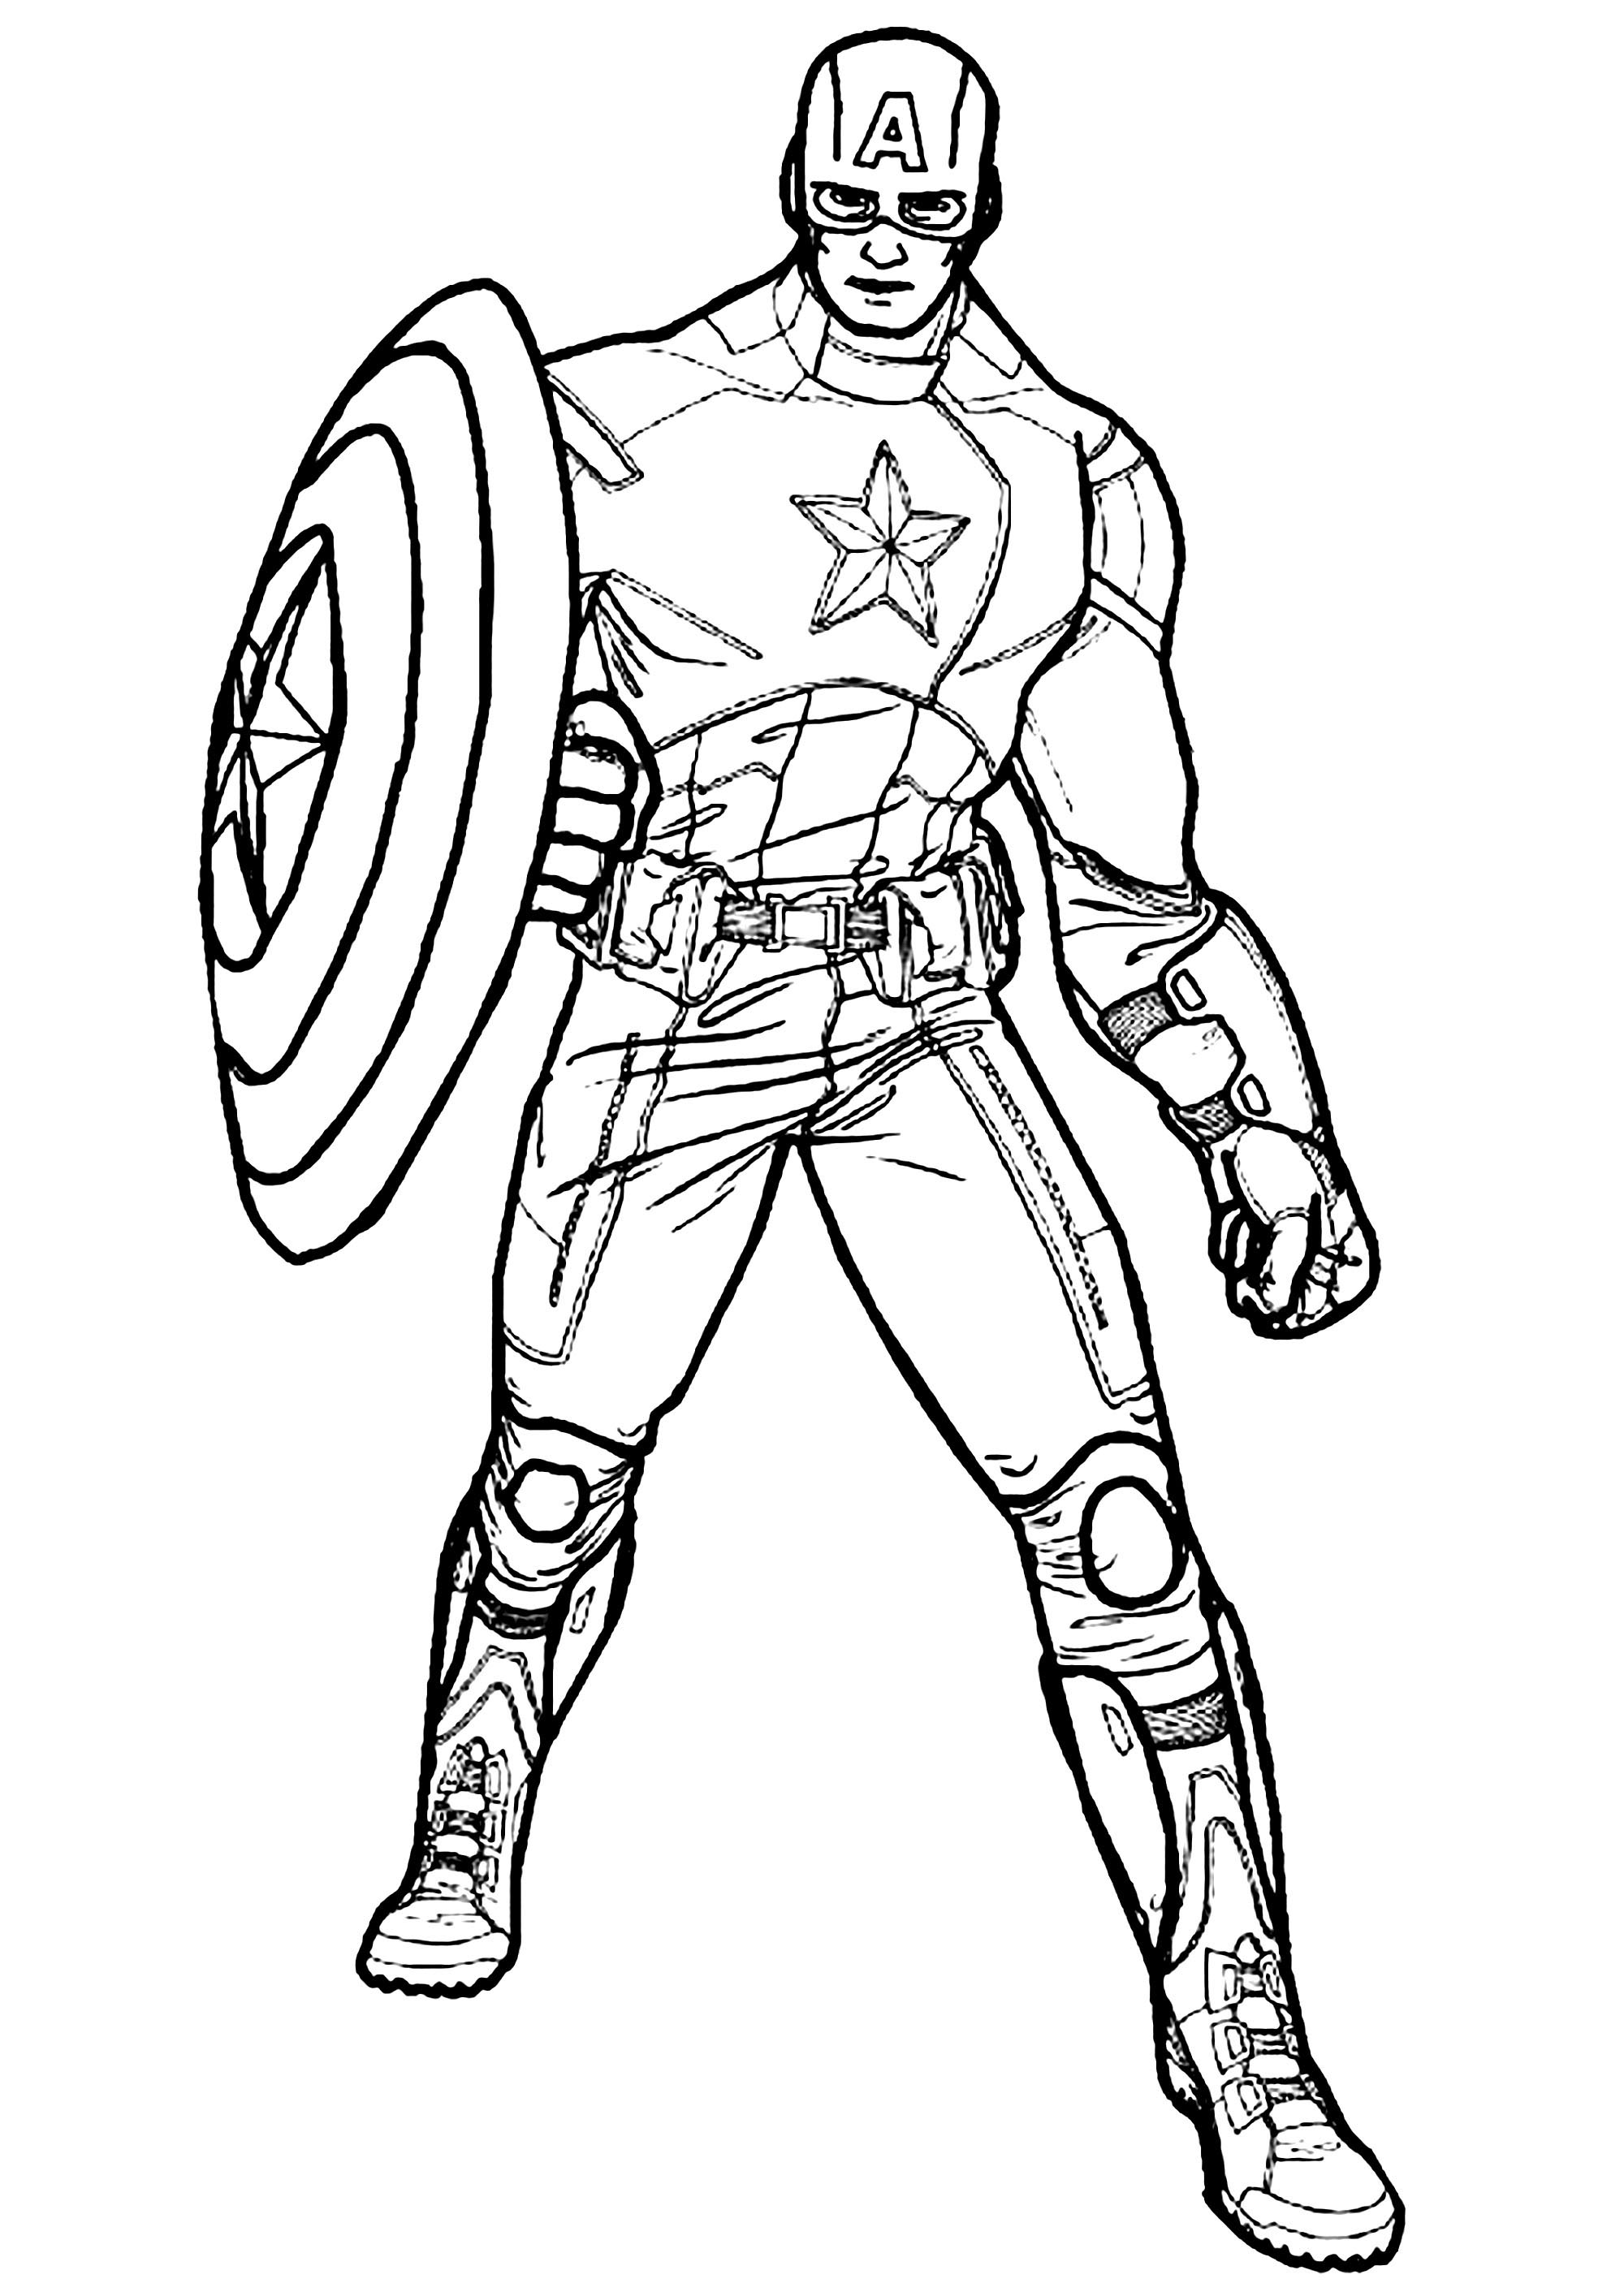 Dibujo de Capitán América para imprimir y colorear